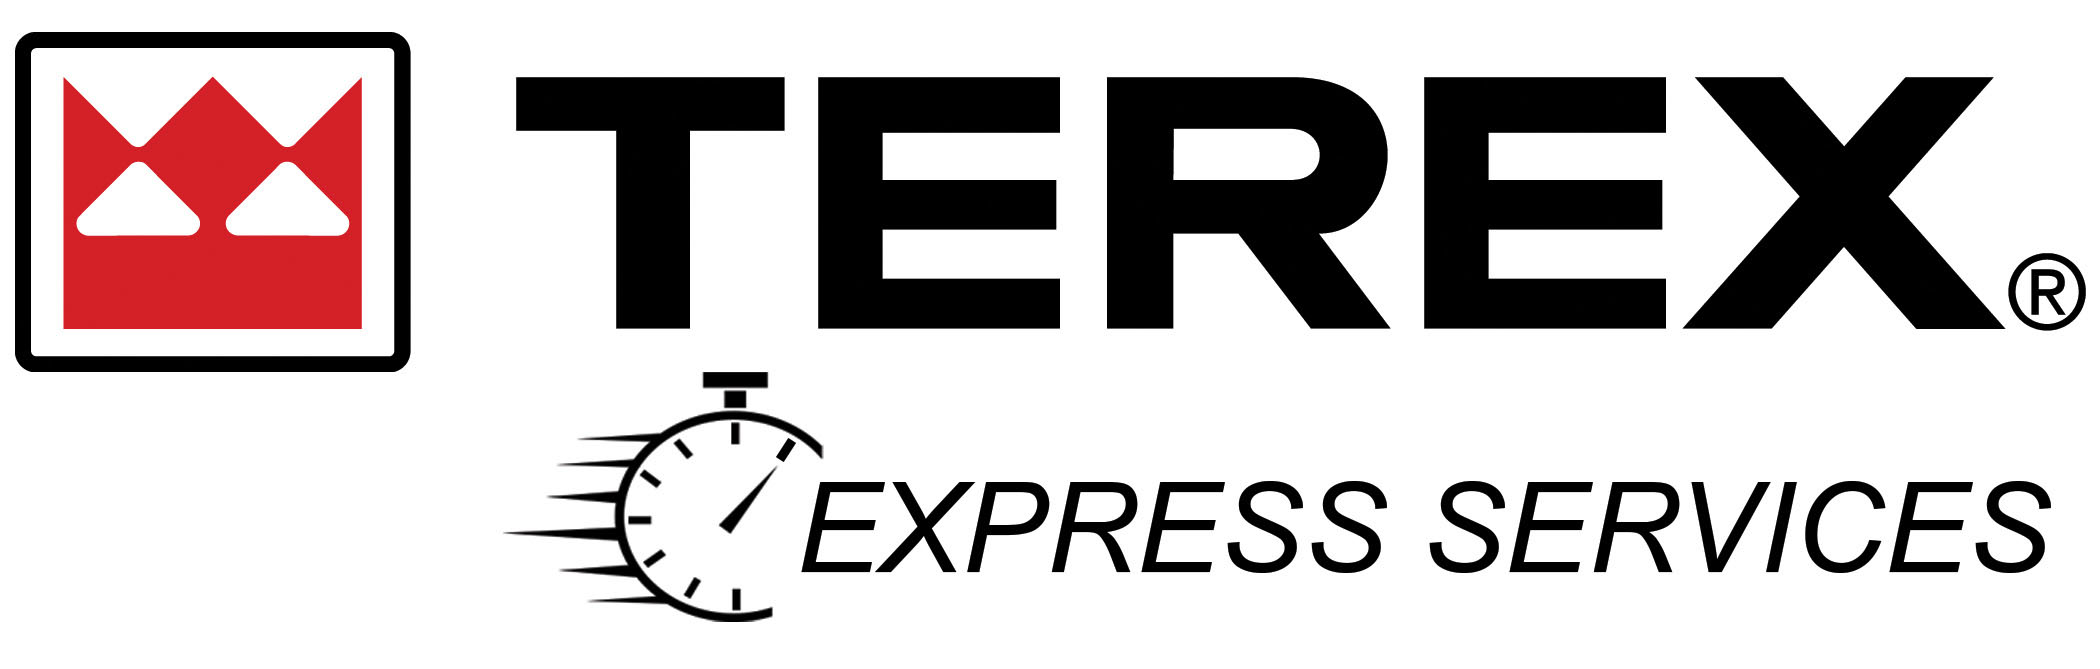 Terex Express Services logo